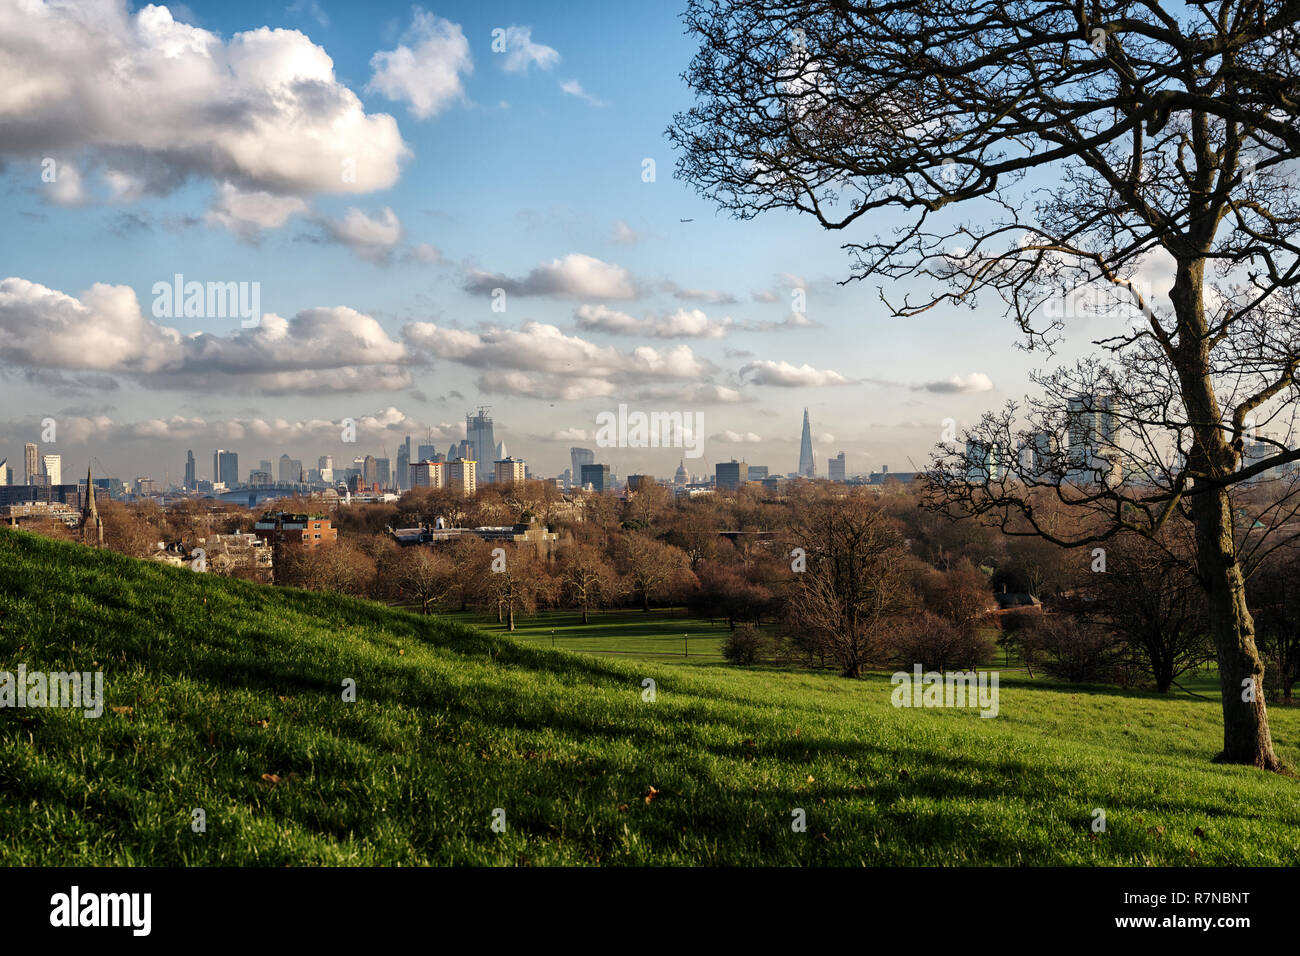 Die dramatische Skyline von London aus gesehen in der Nähe der Gipfel der Primrose Hill in Camden Town, nördlich von London in der Nähe des Regents Park im Herbst Licht Stockfoto